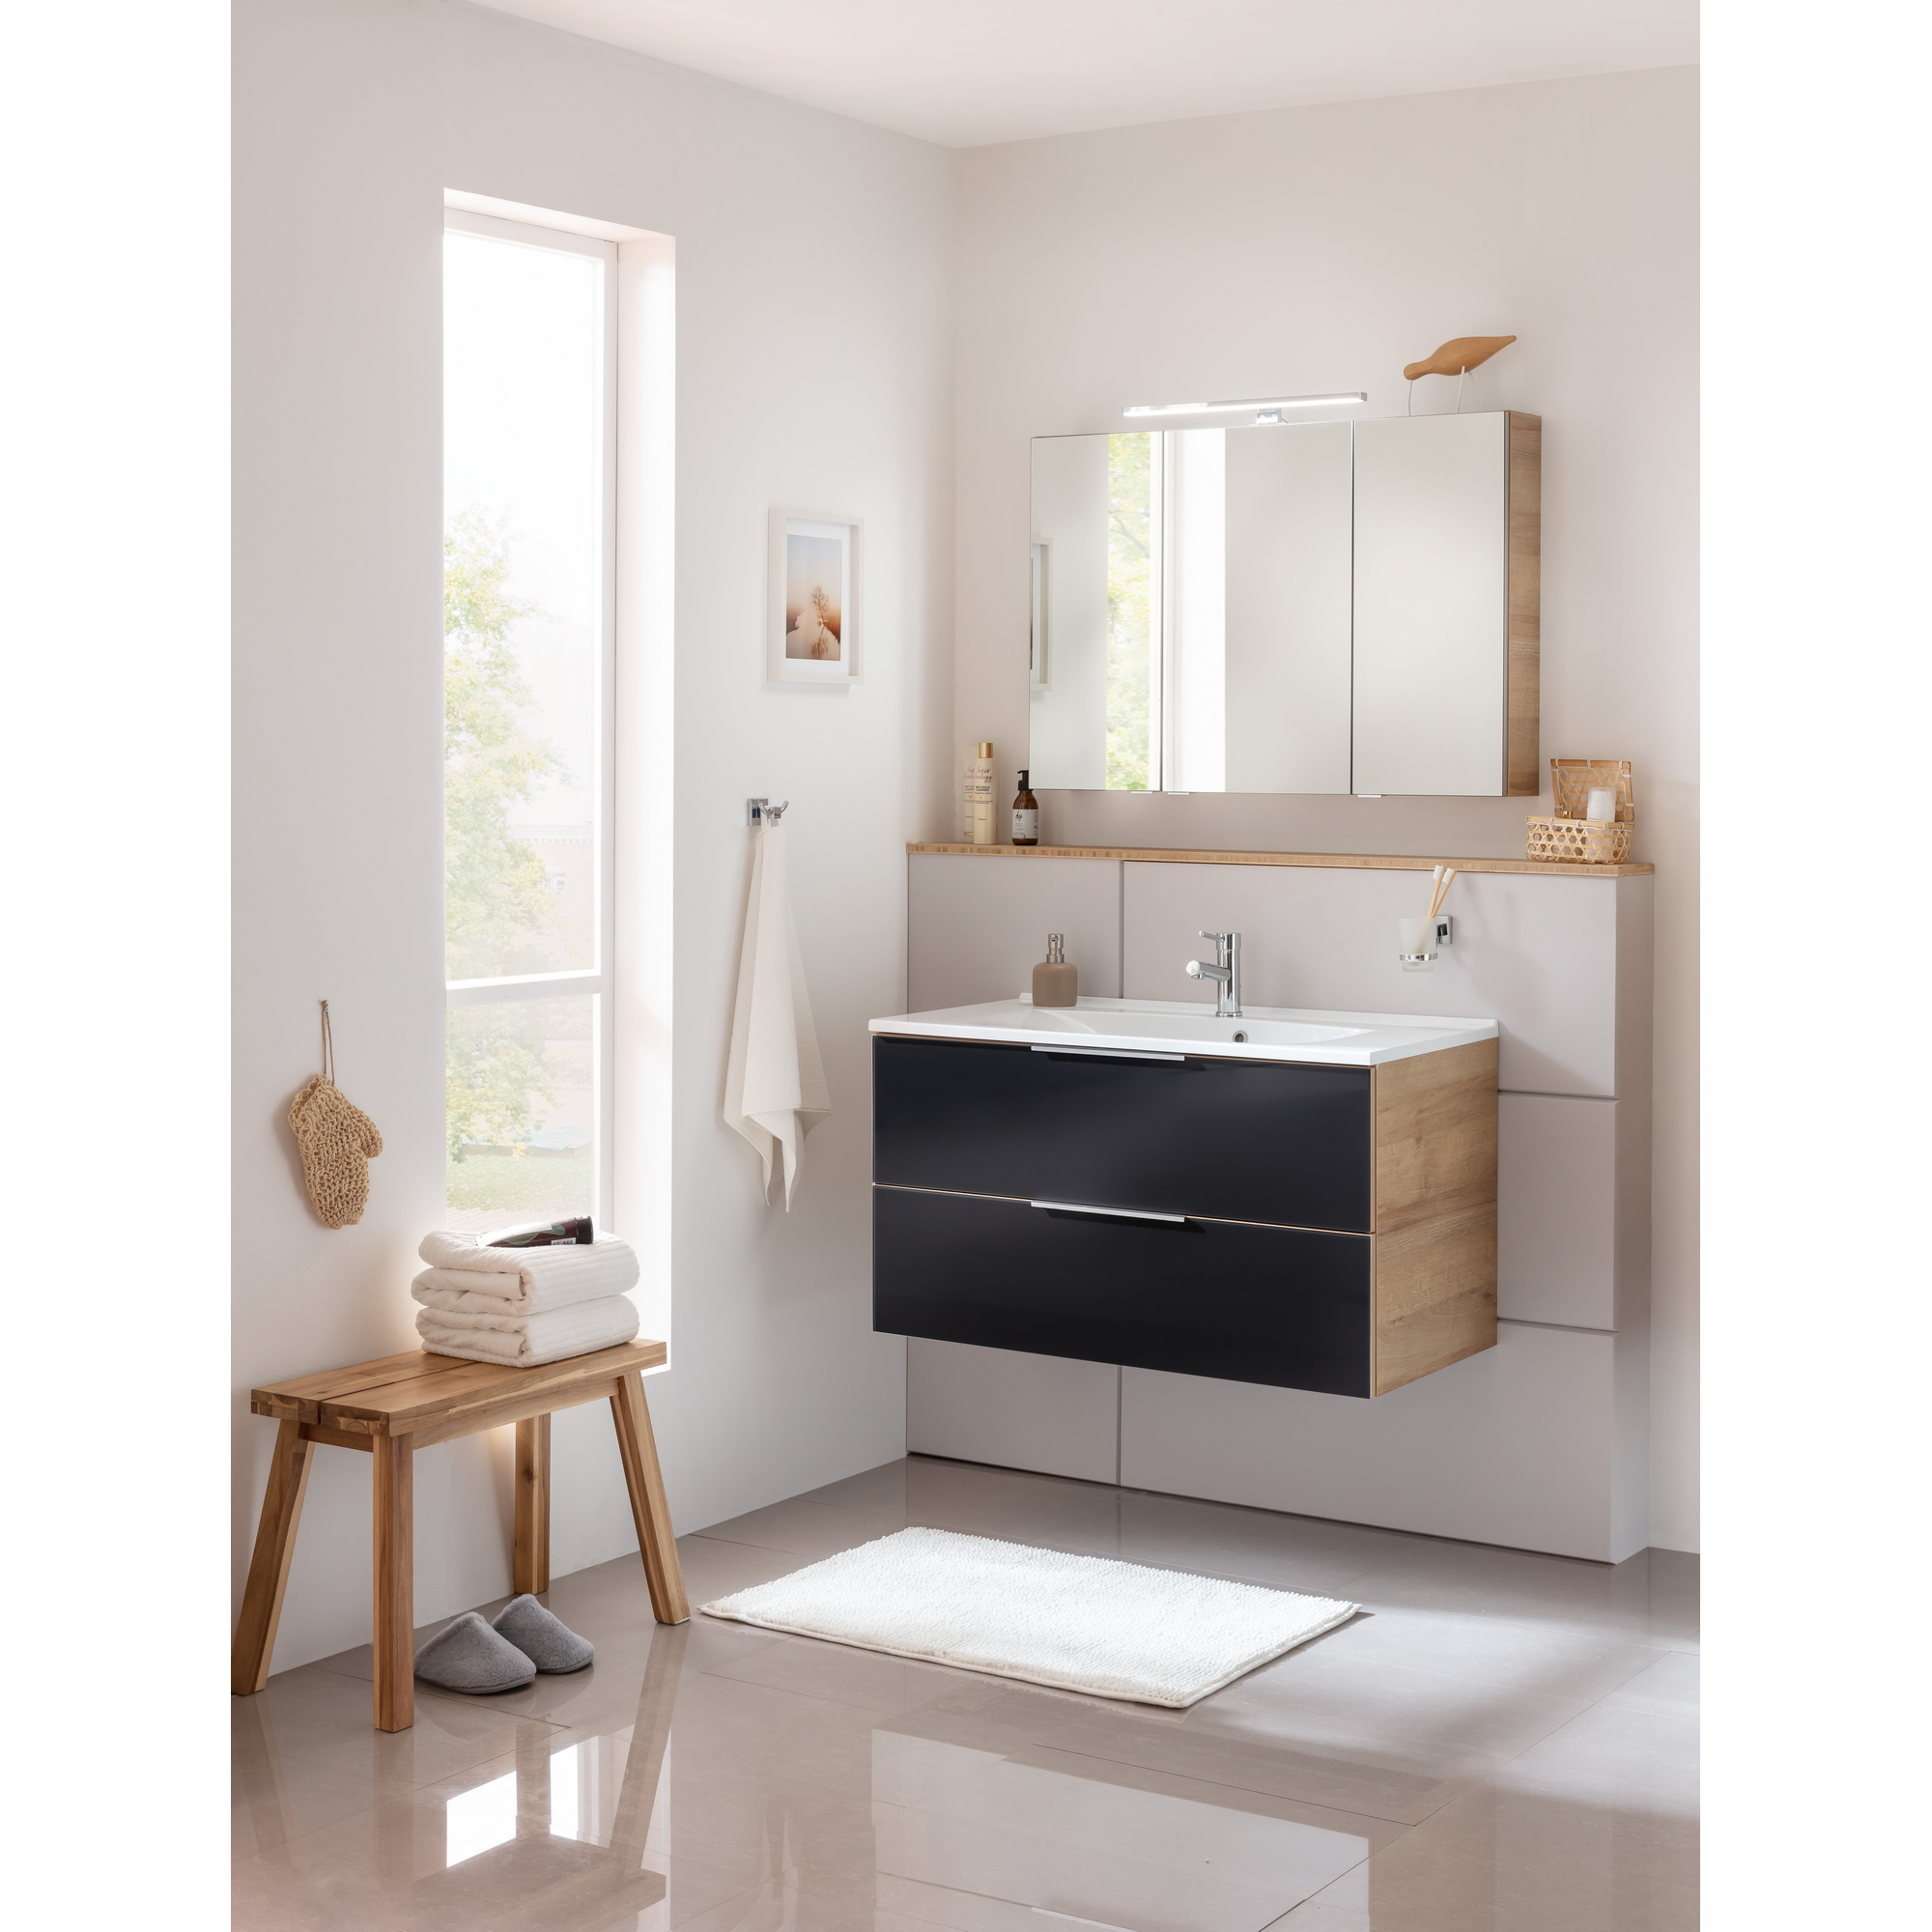 Waschbecken mit Unterschrank 'B.Brillant' Asteiche/Anthrazit 100 x 56 x 50 cm + product picture